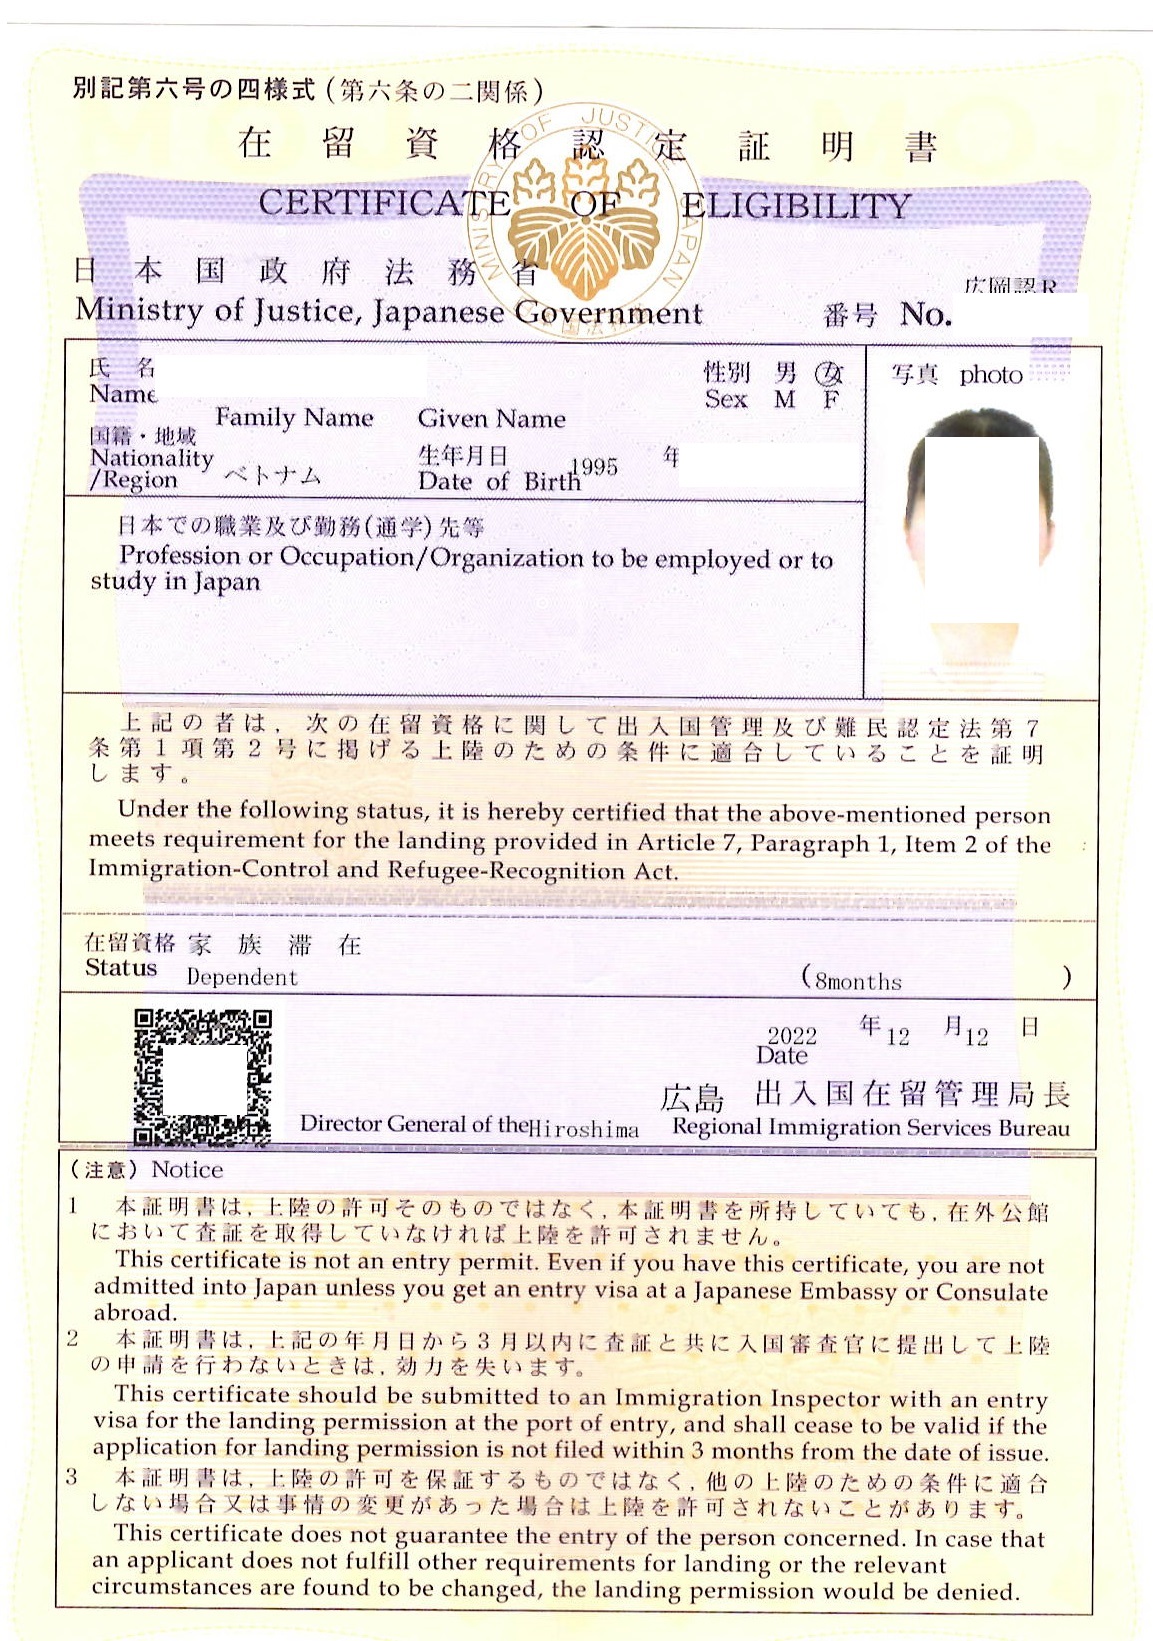 ベトナム人「家族滞在」での在留資格認定証明書を取得